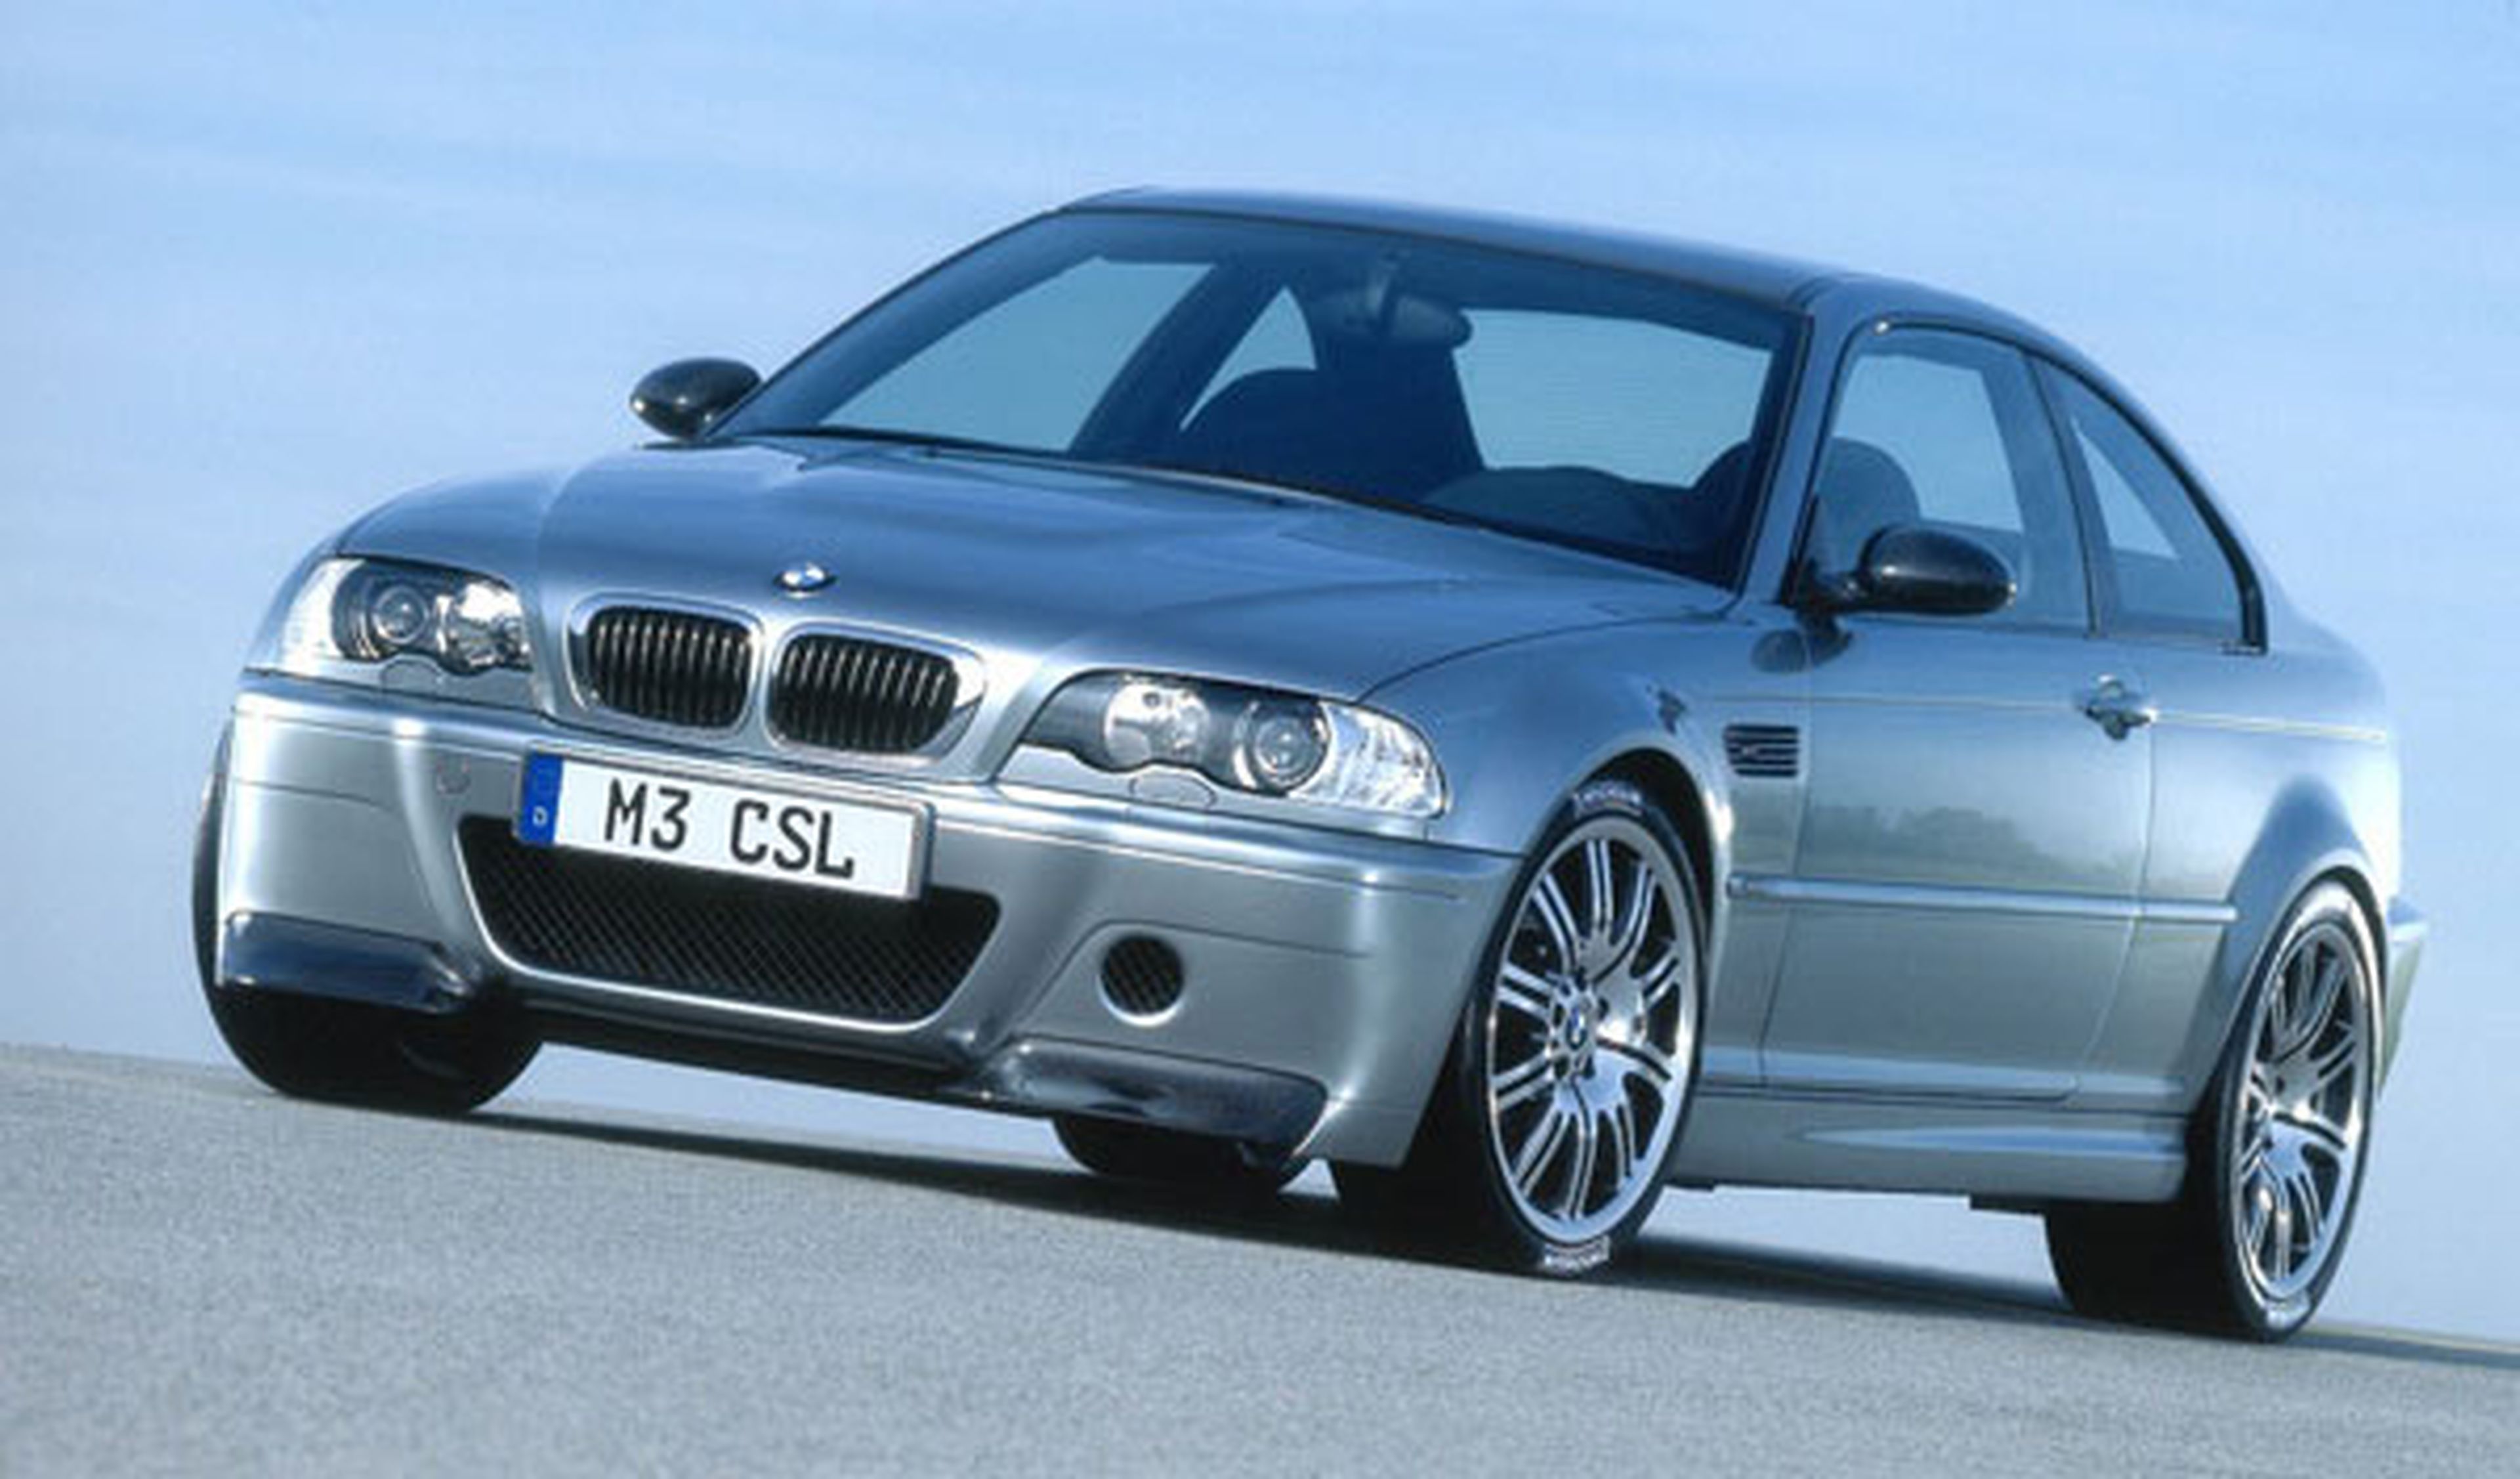 ¡Menudo negocio! Un BMW M3 CSL a la venta por 109.000 Euros